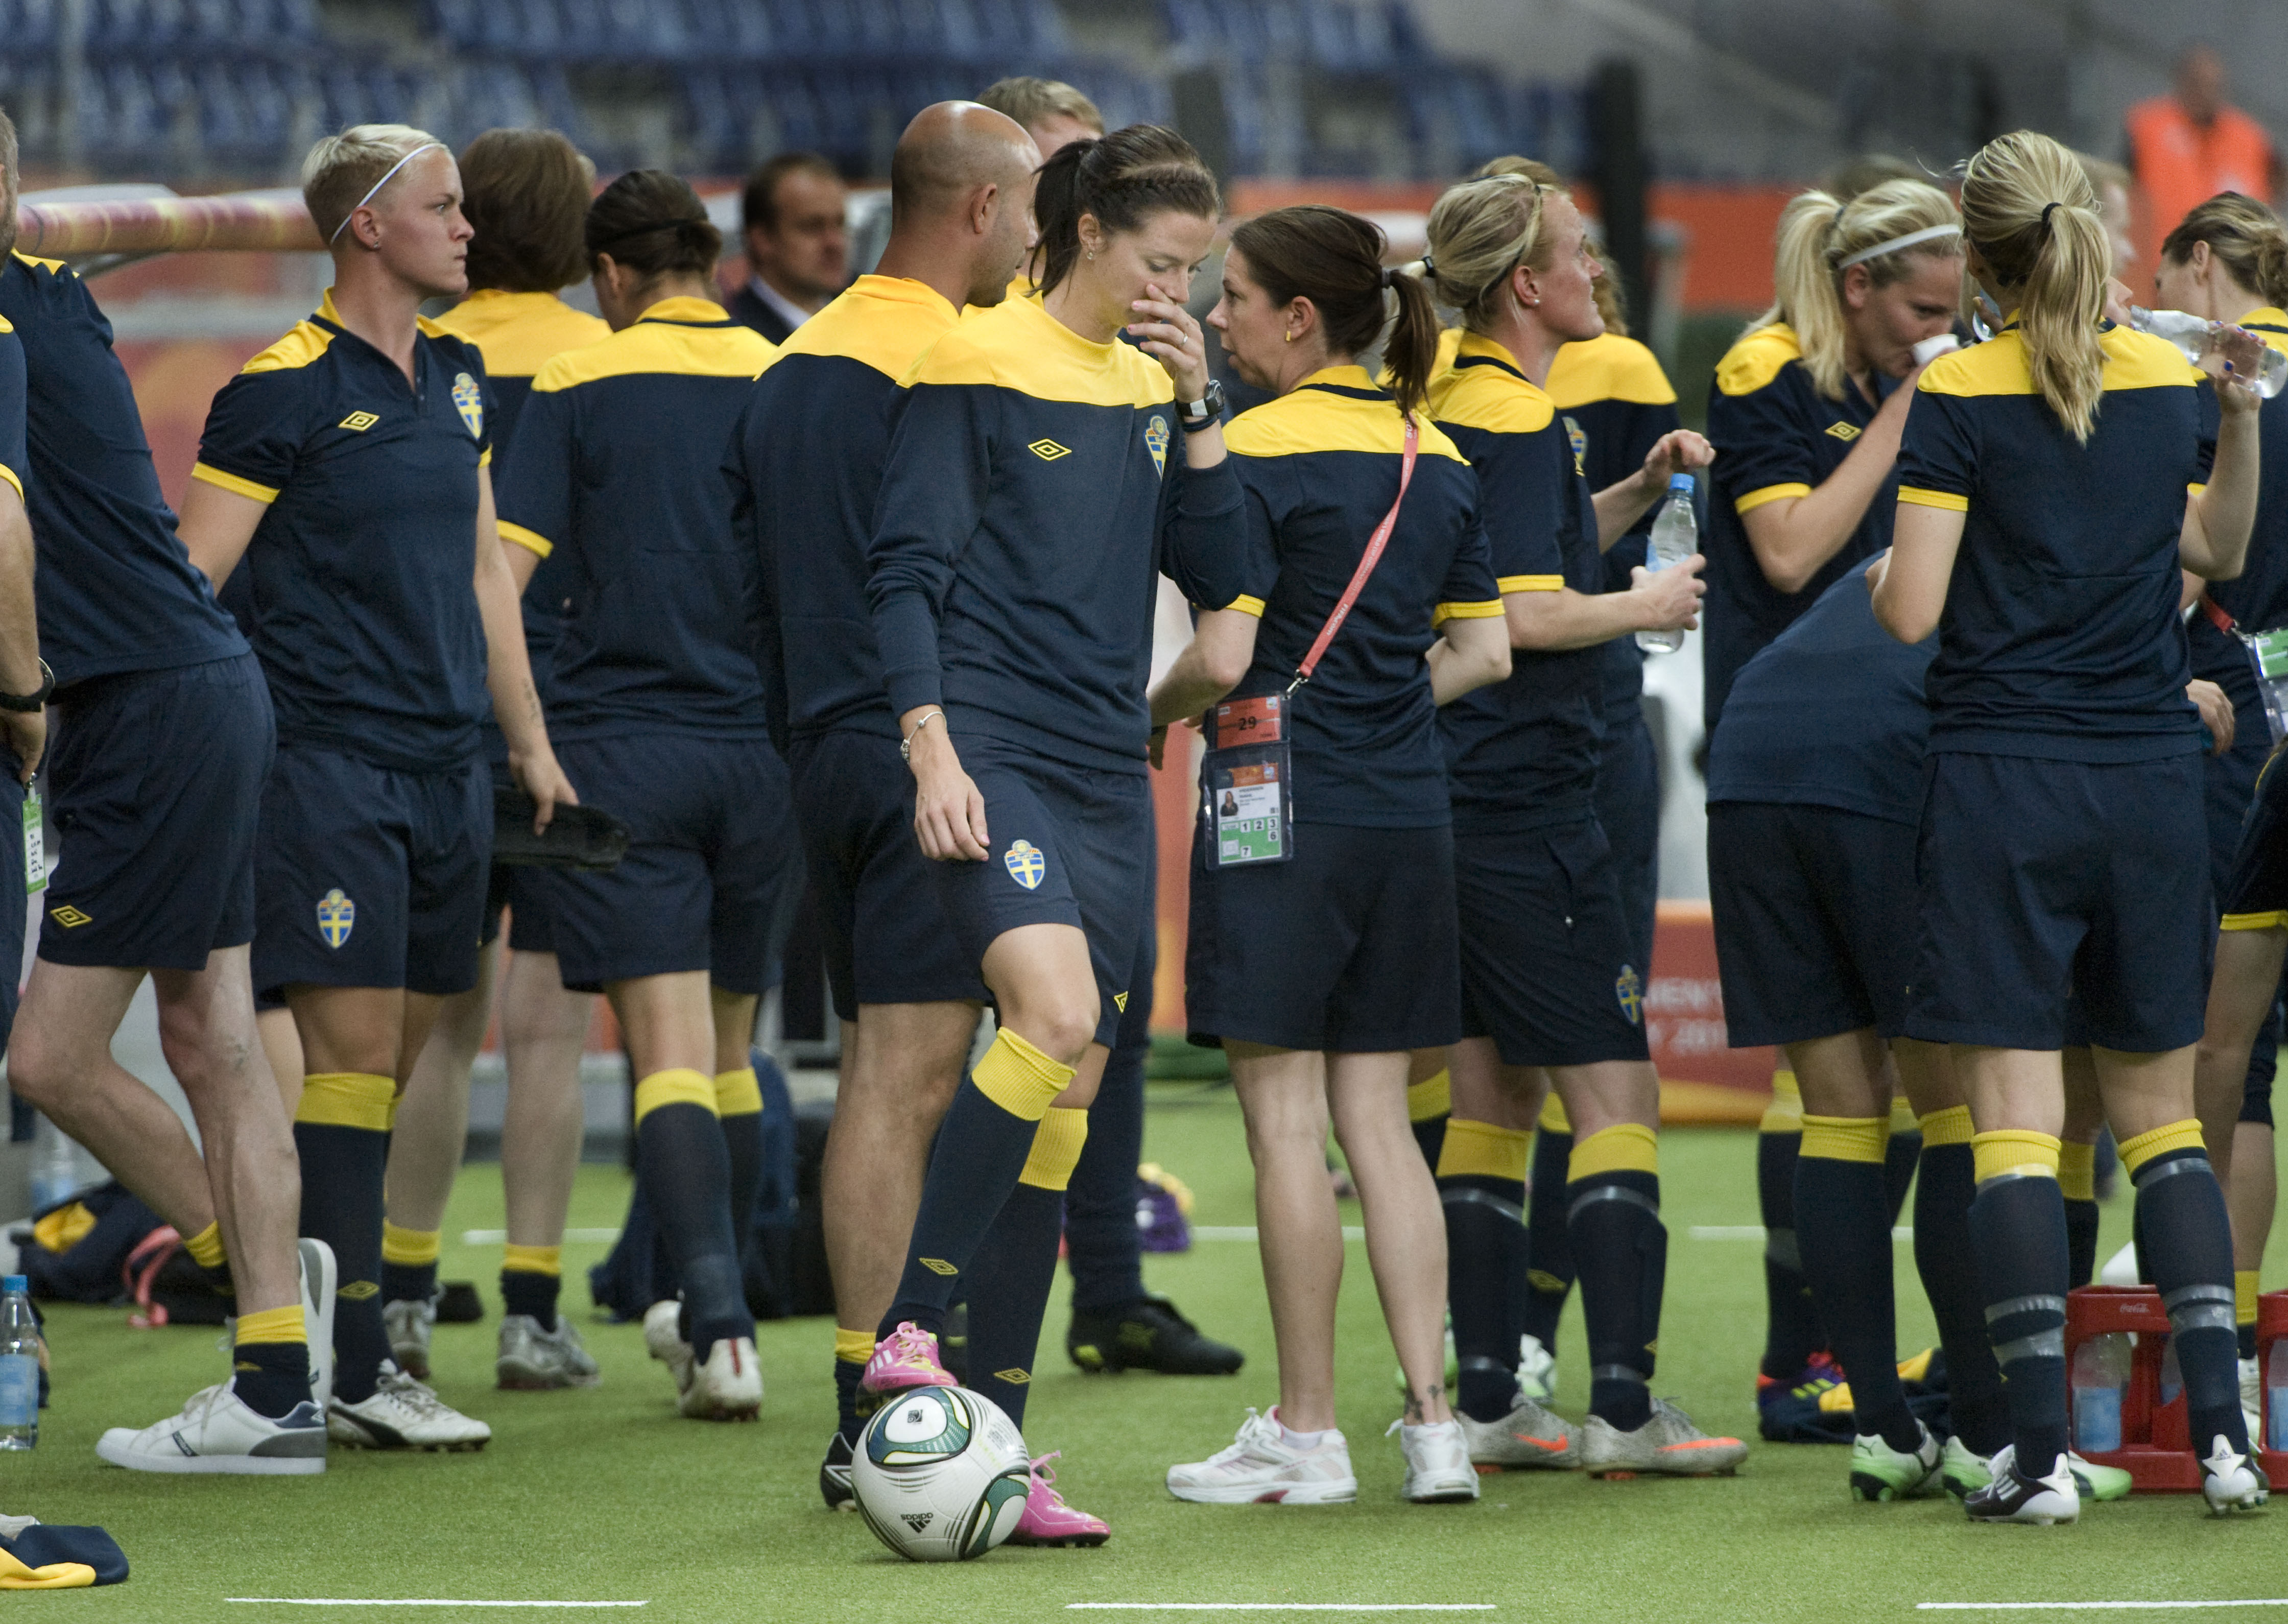 Damlandslaget ska spela hem en bronspeng mot fransyskorna i dam-VM.